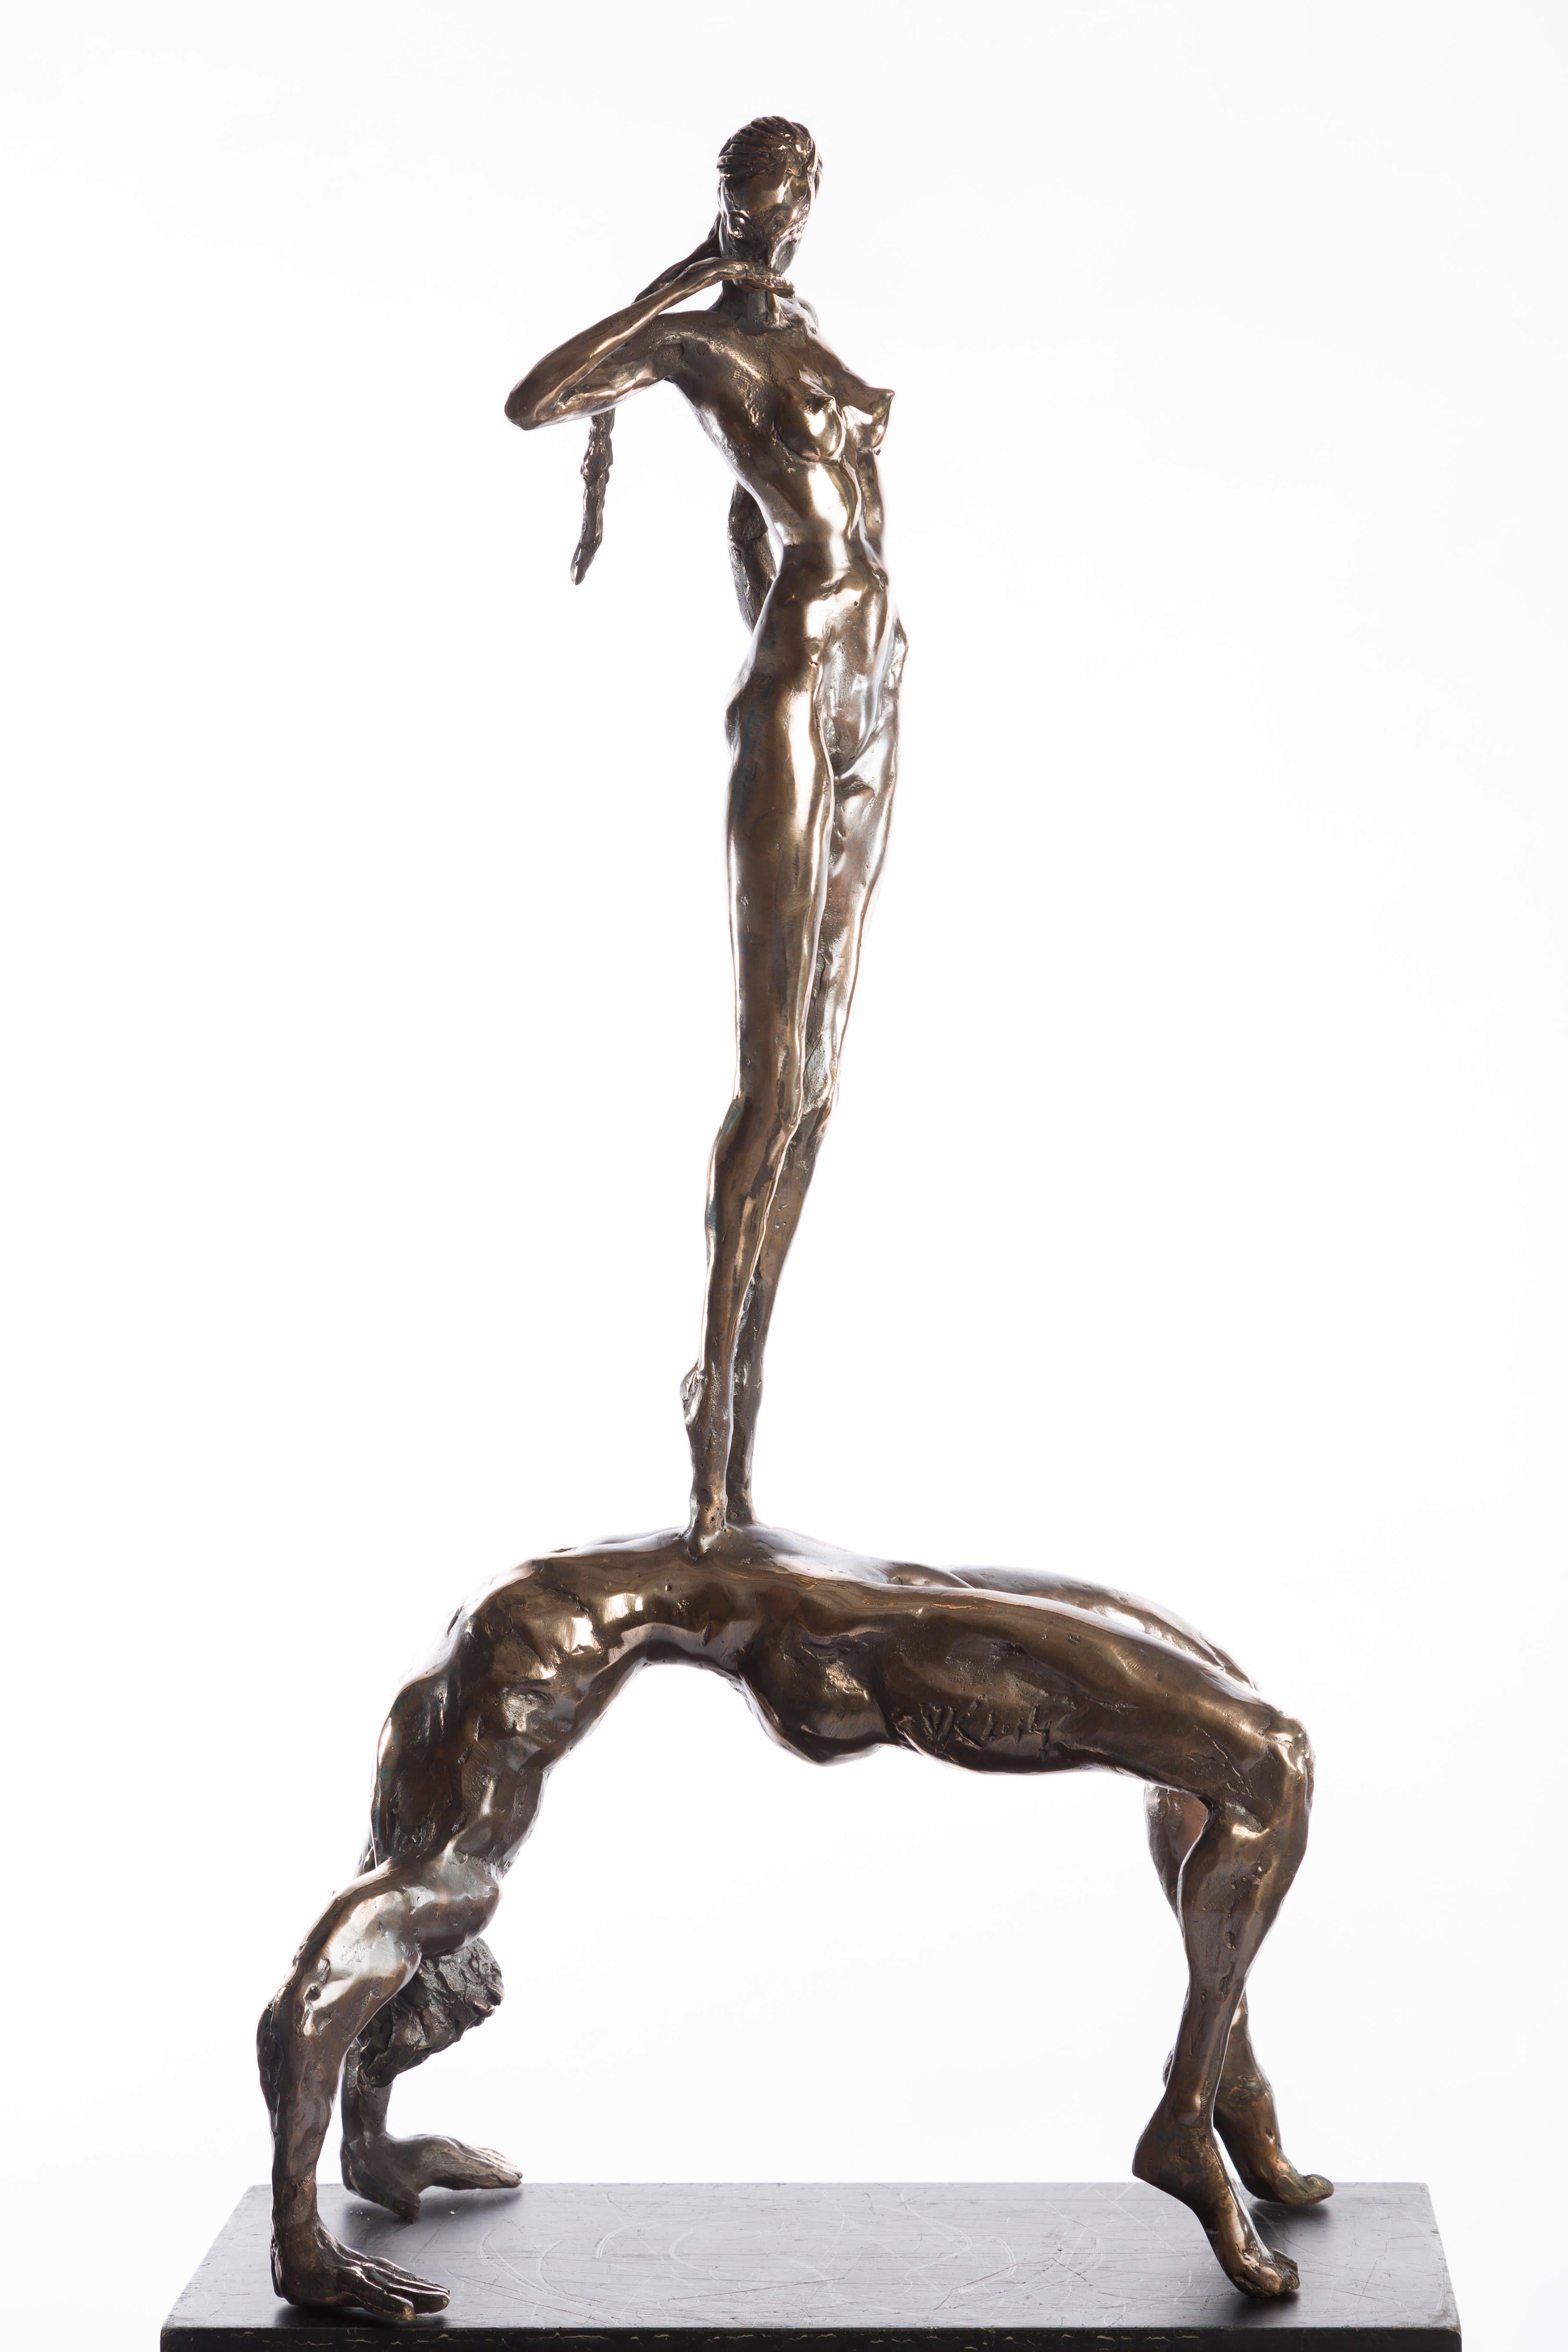 stick figure sculpture